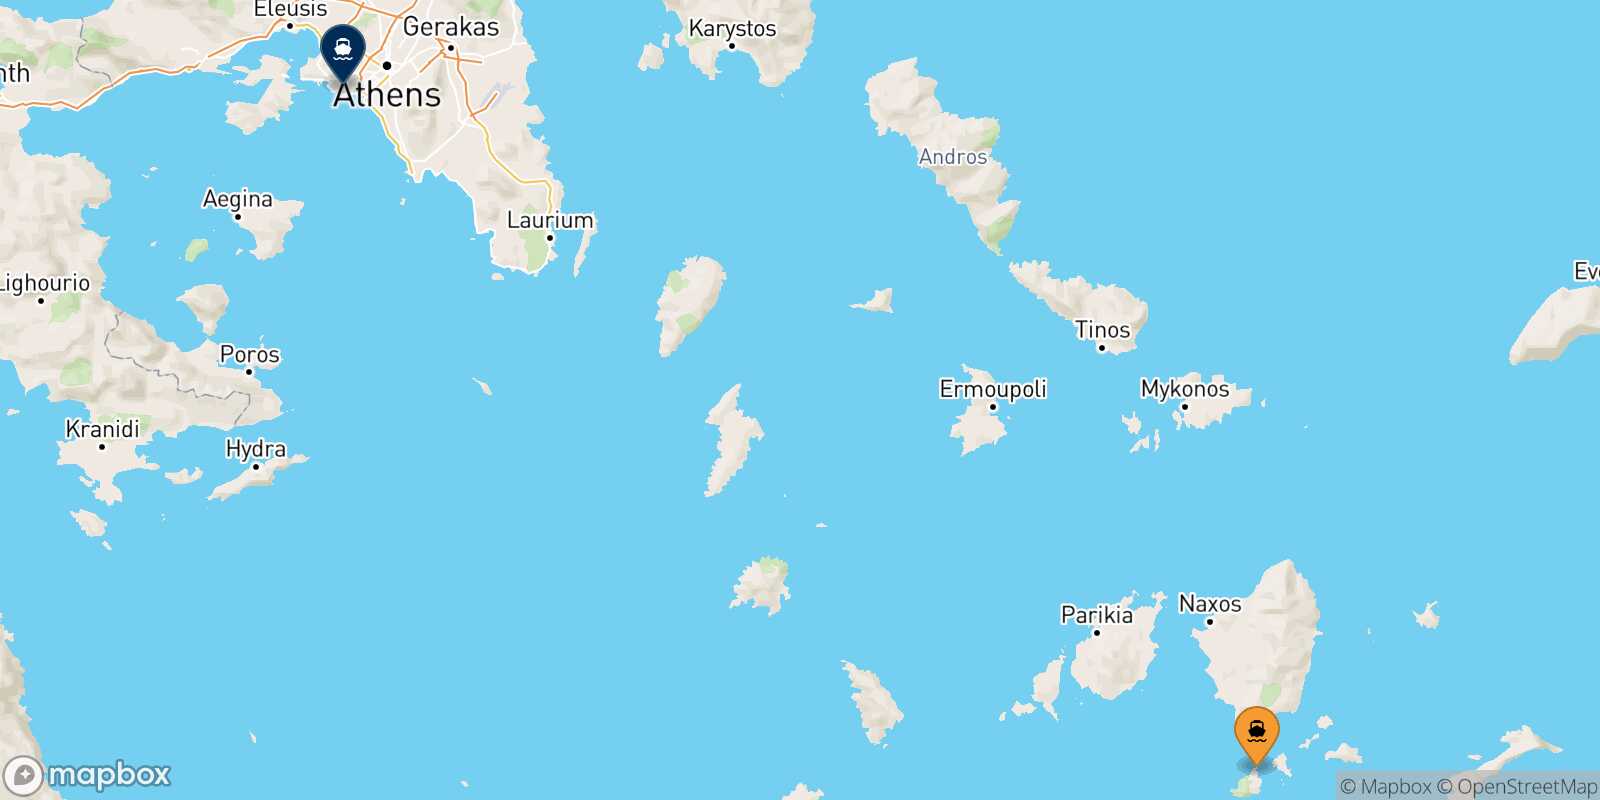 Iraklia Piraeus route map